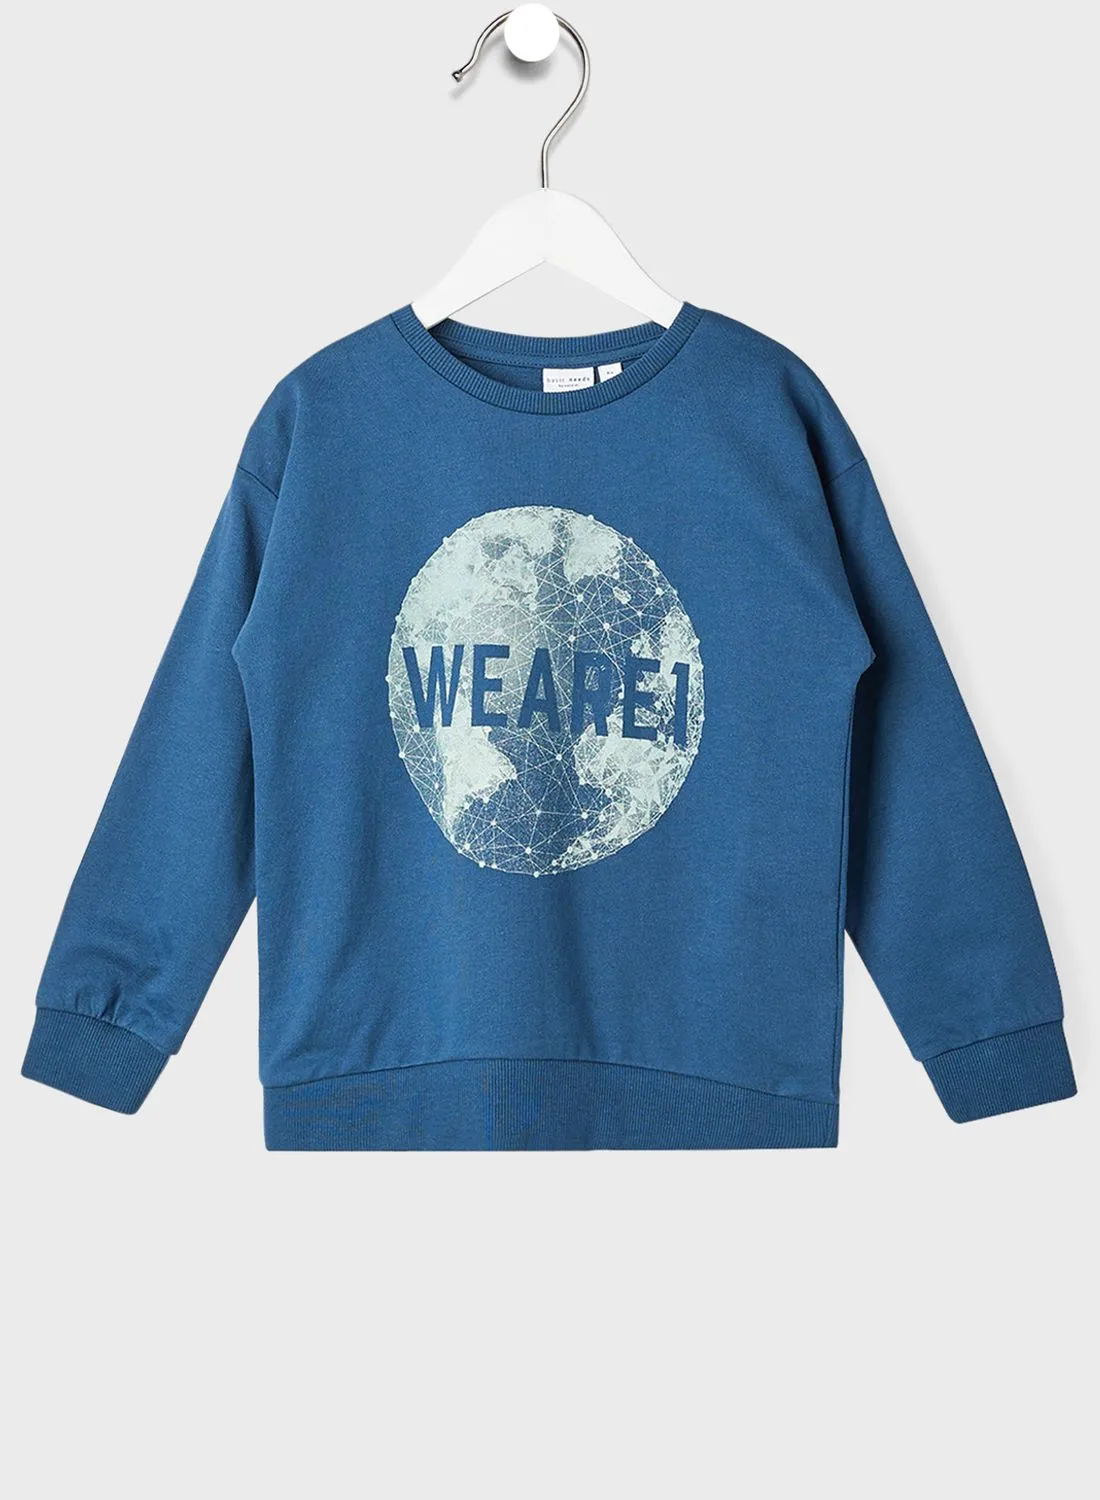 NAME IT Kids Printed Sweatshirt